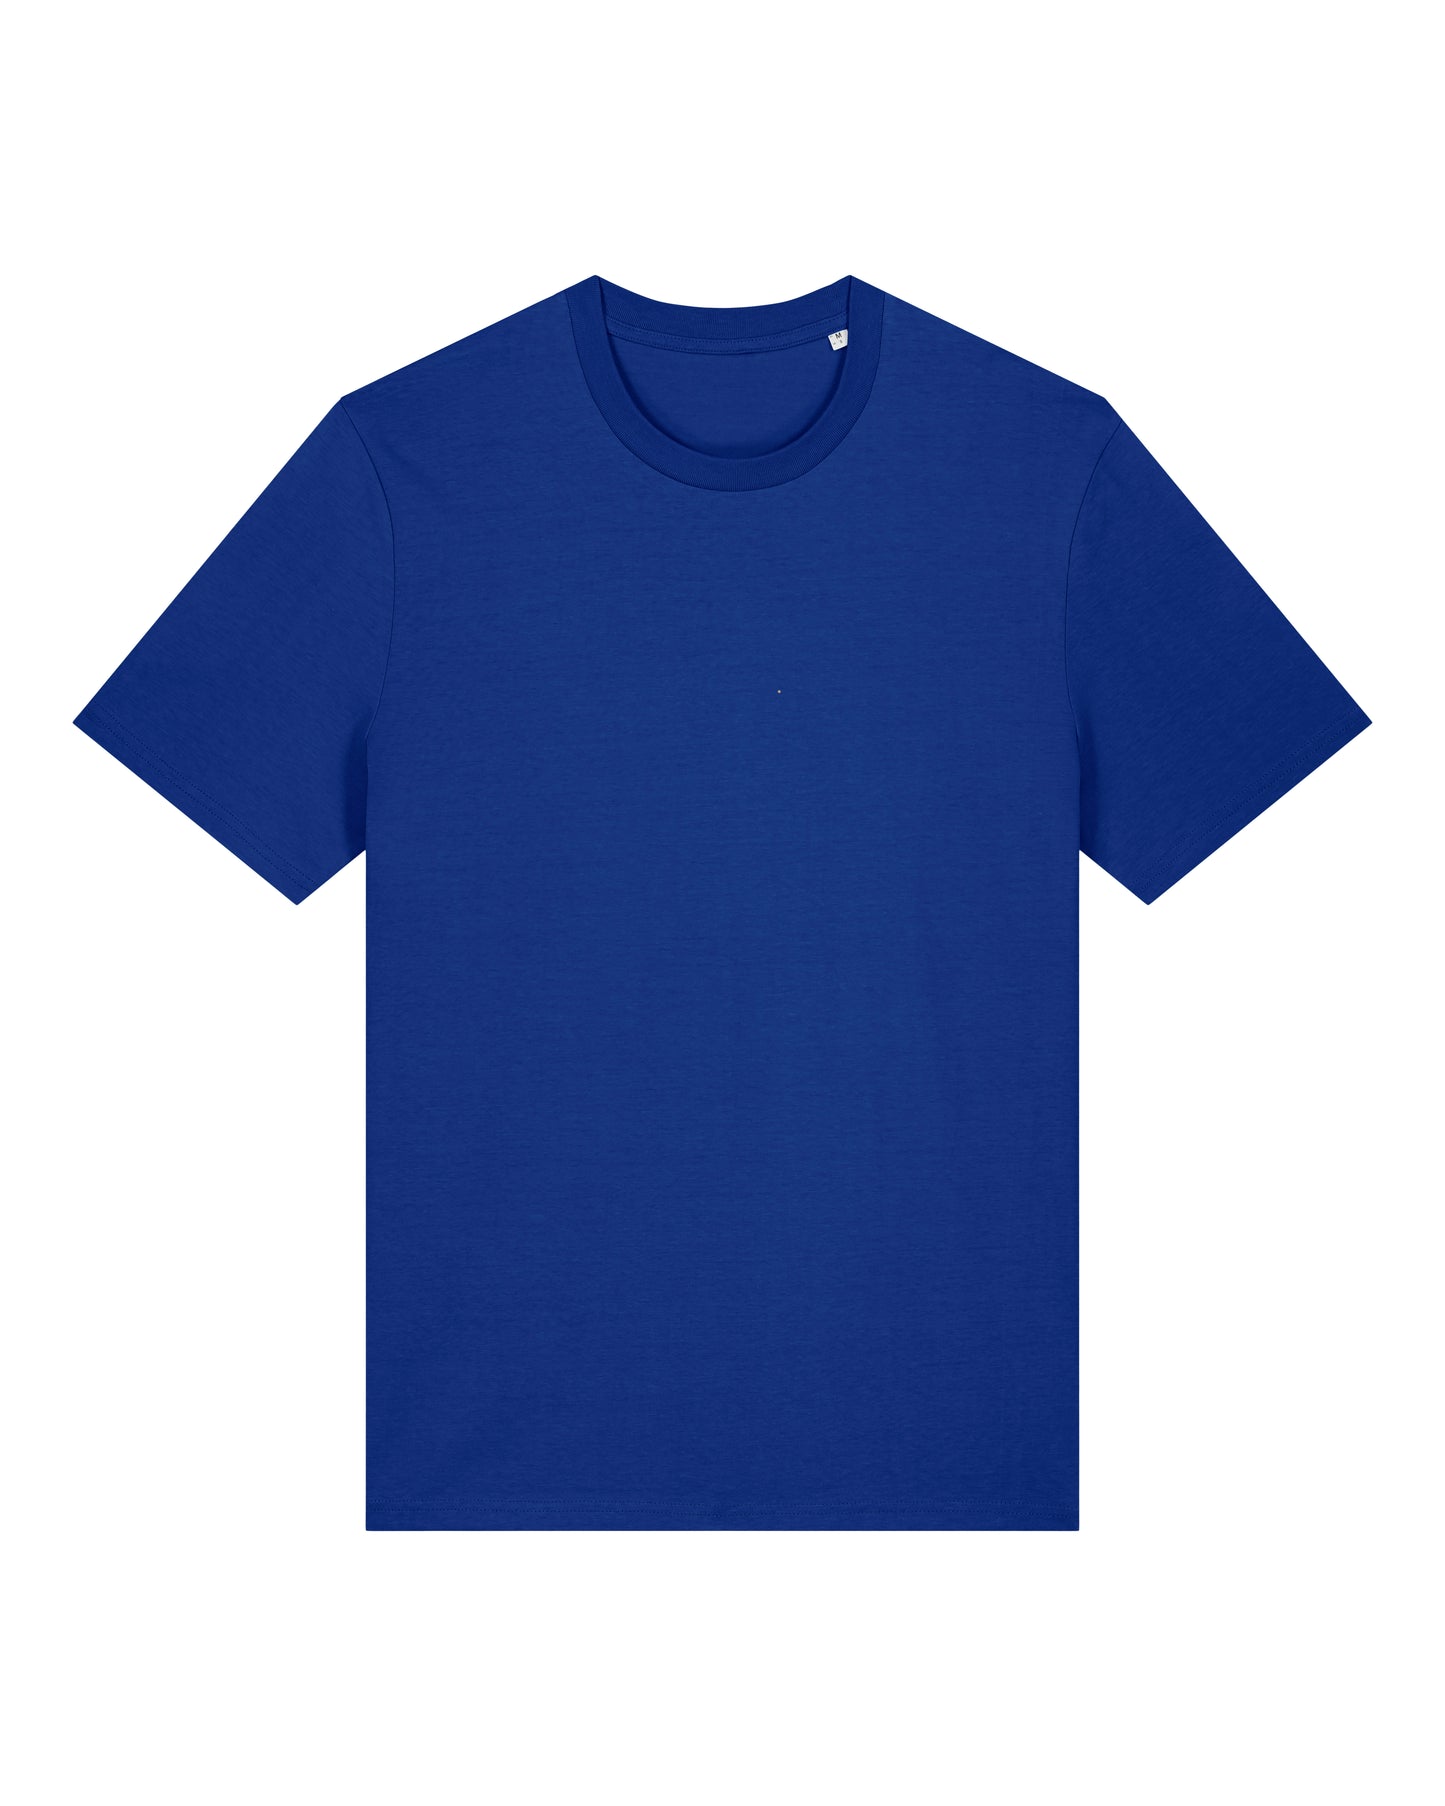 It Fits Player - T-shirt unisexe coupe régulière - Col bleu